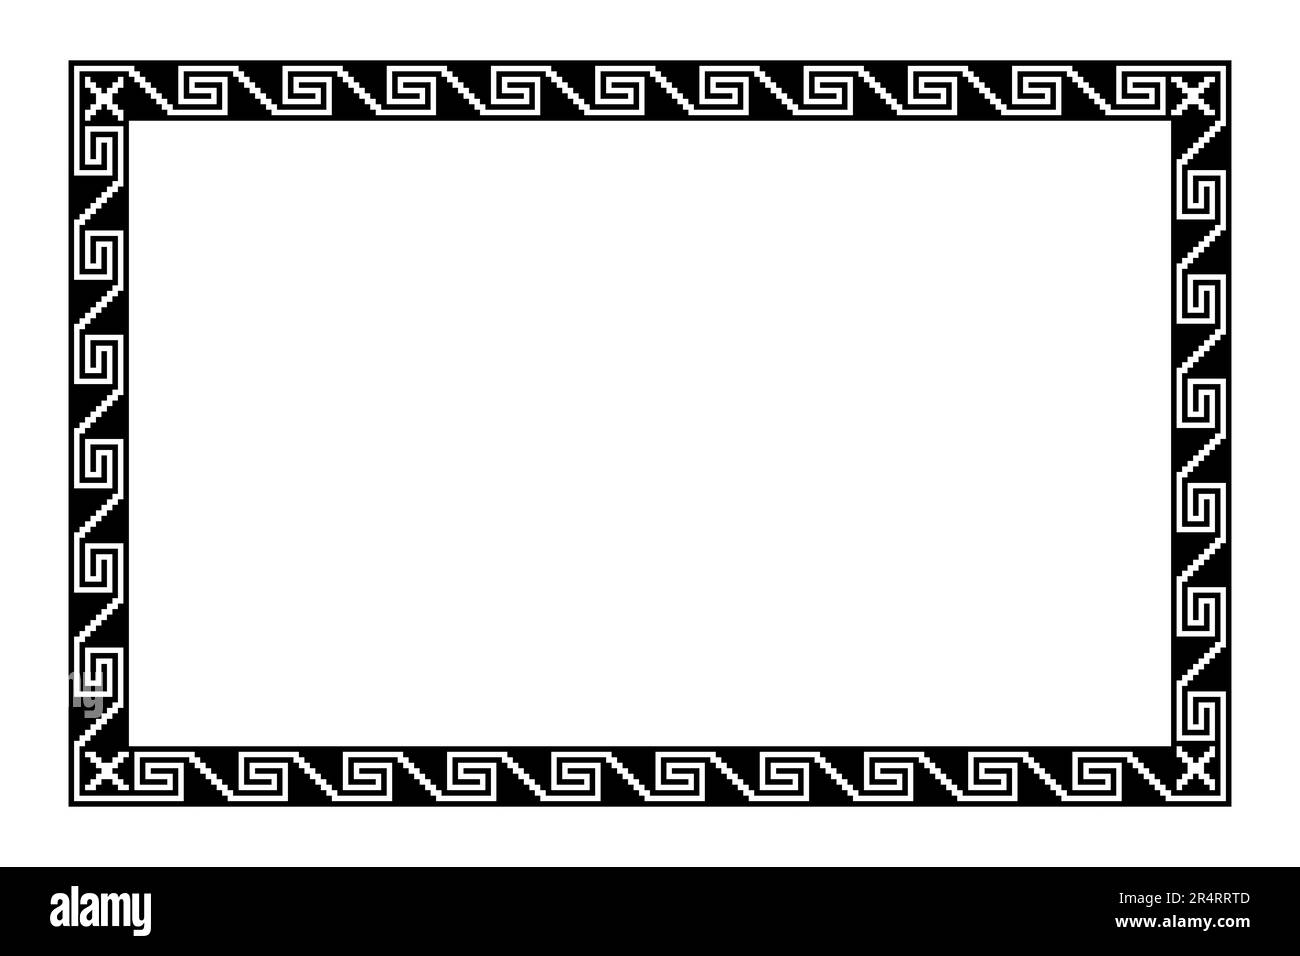 Motif de frettes à gradins Aztec, cadre rectangulaire avec motif méandre serpent. Frontière faite de marches, sans couture reliée à une spirale, semblable à la clé grecque. Banque D'Images